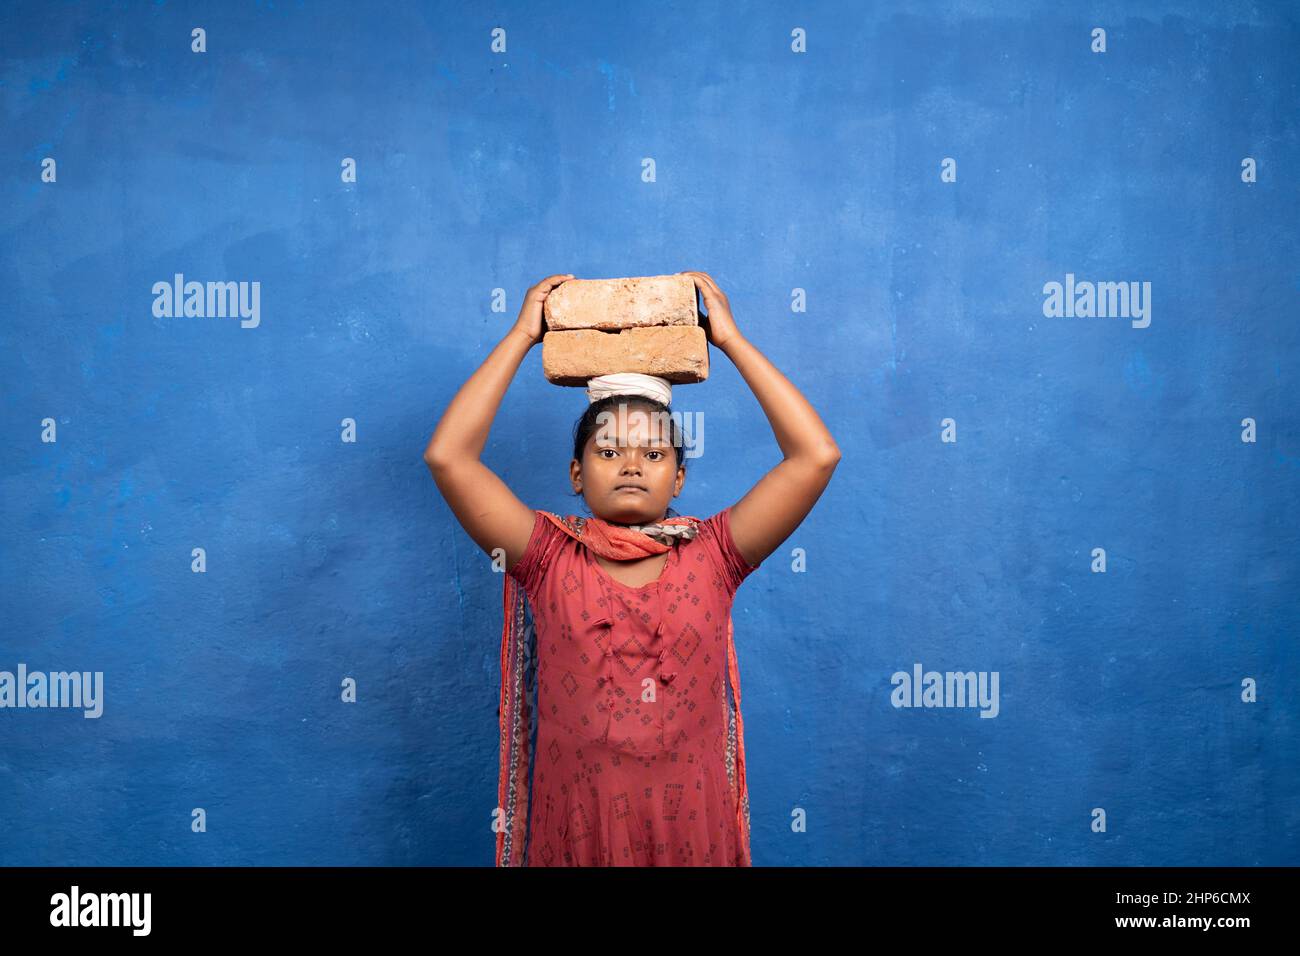 Bambino giovane ragazza che tiene i mattoni sulla testa guardando la macchina fotografica con lo spazio di copia - concetto di lavoro infantile, povertà e ignoranza. Foto Stock